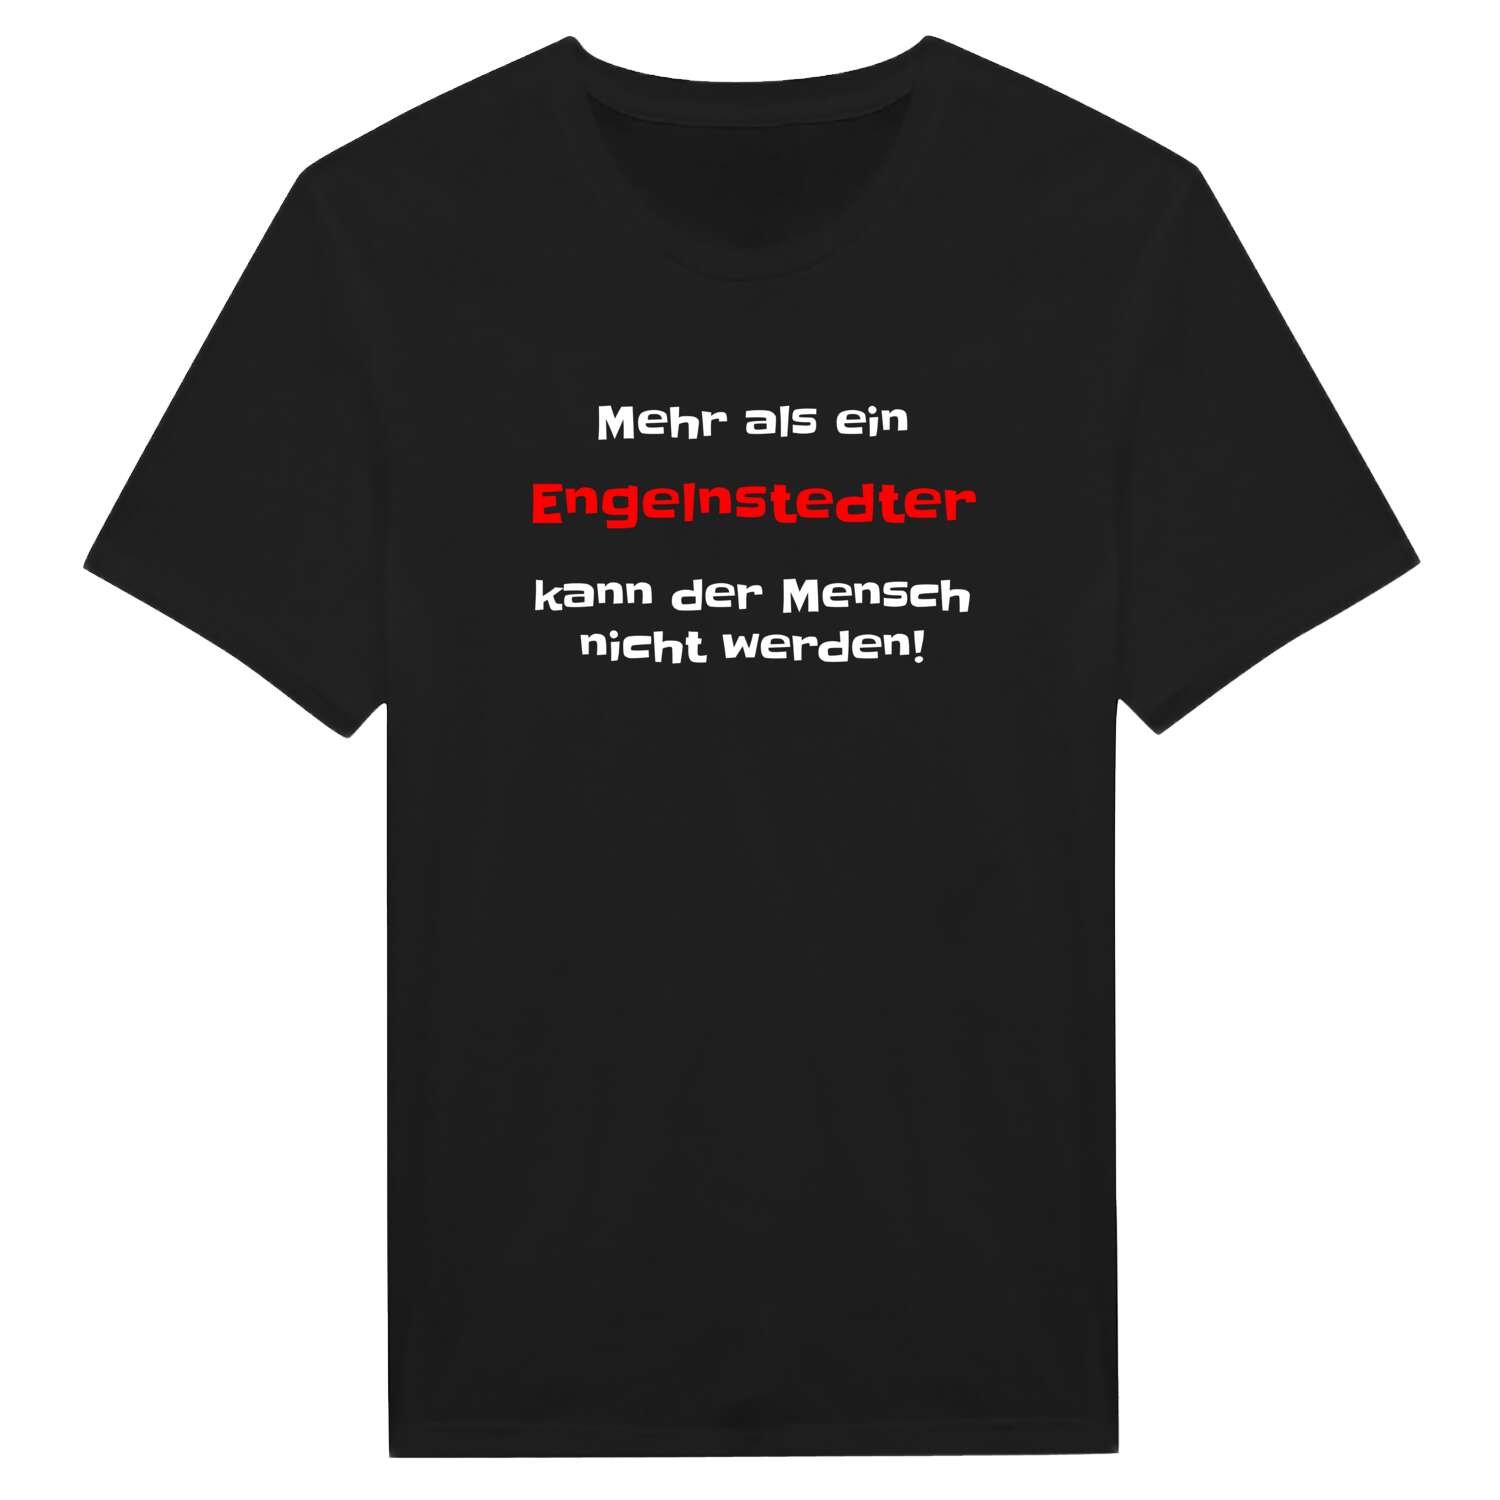 Engelnstedt T-Shirt »Mehr als ein«